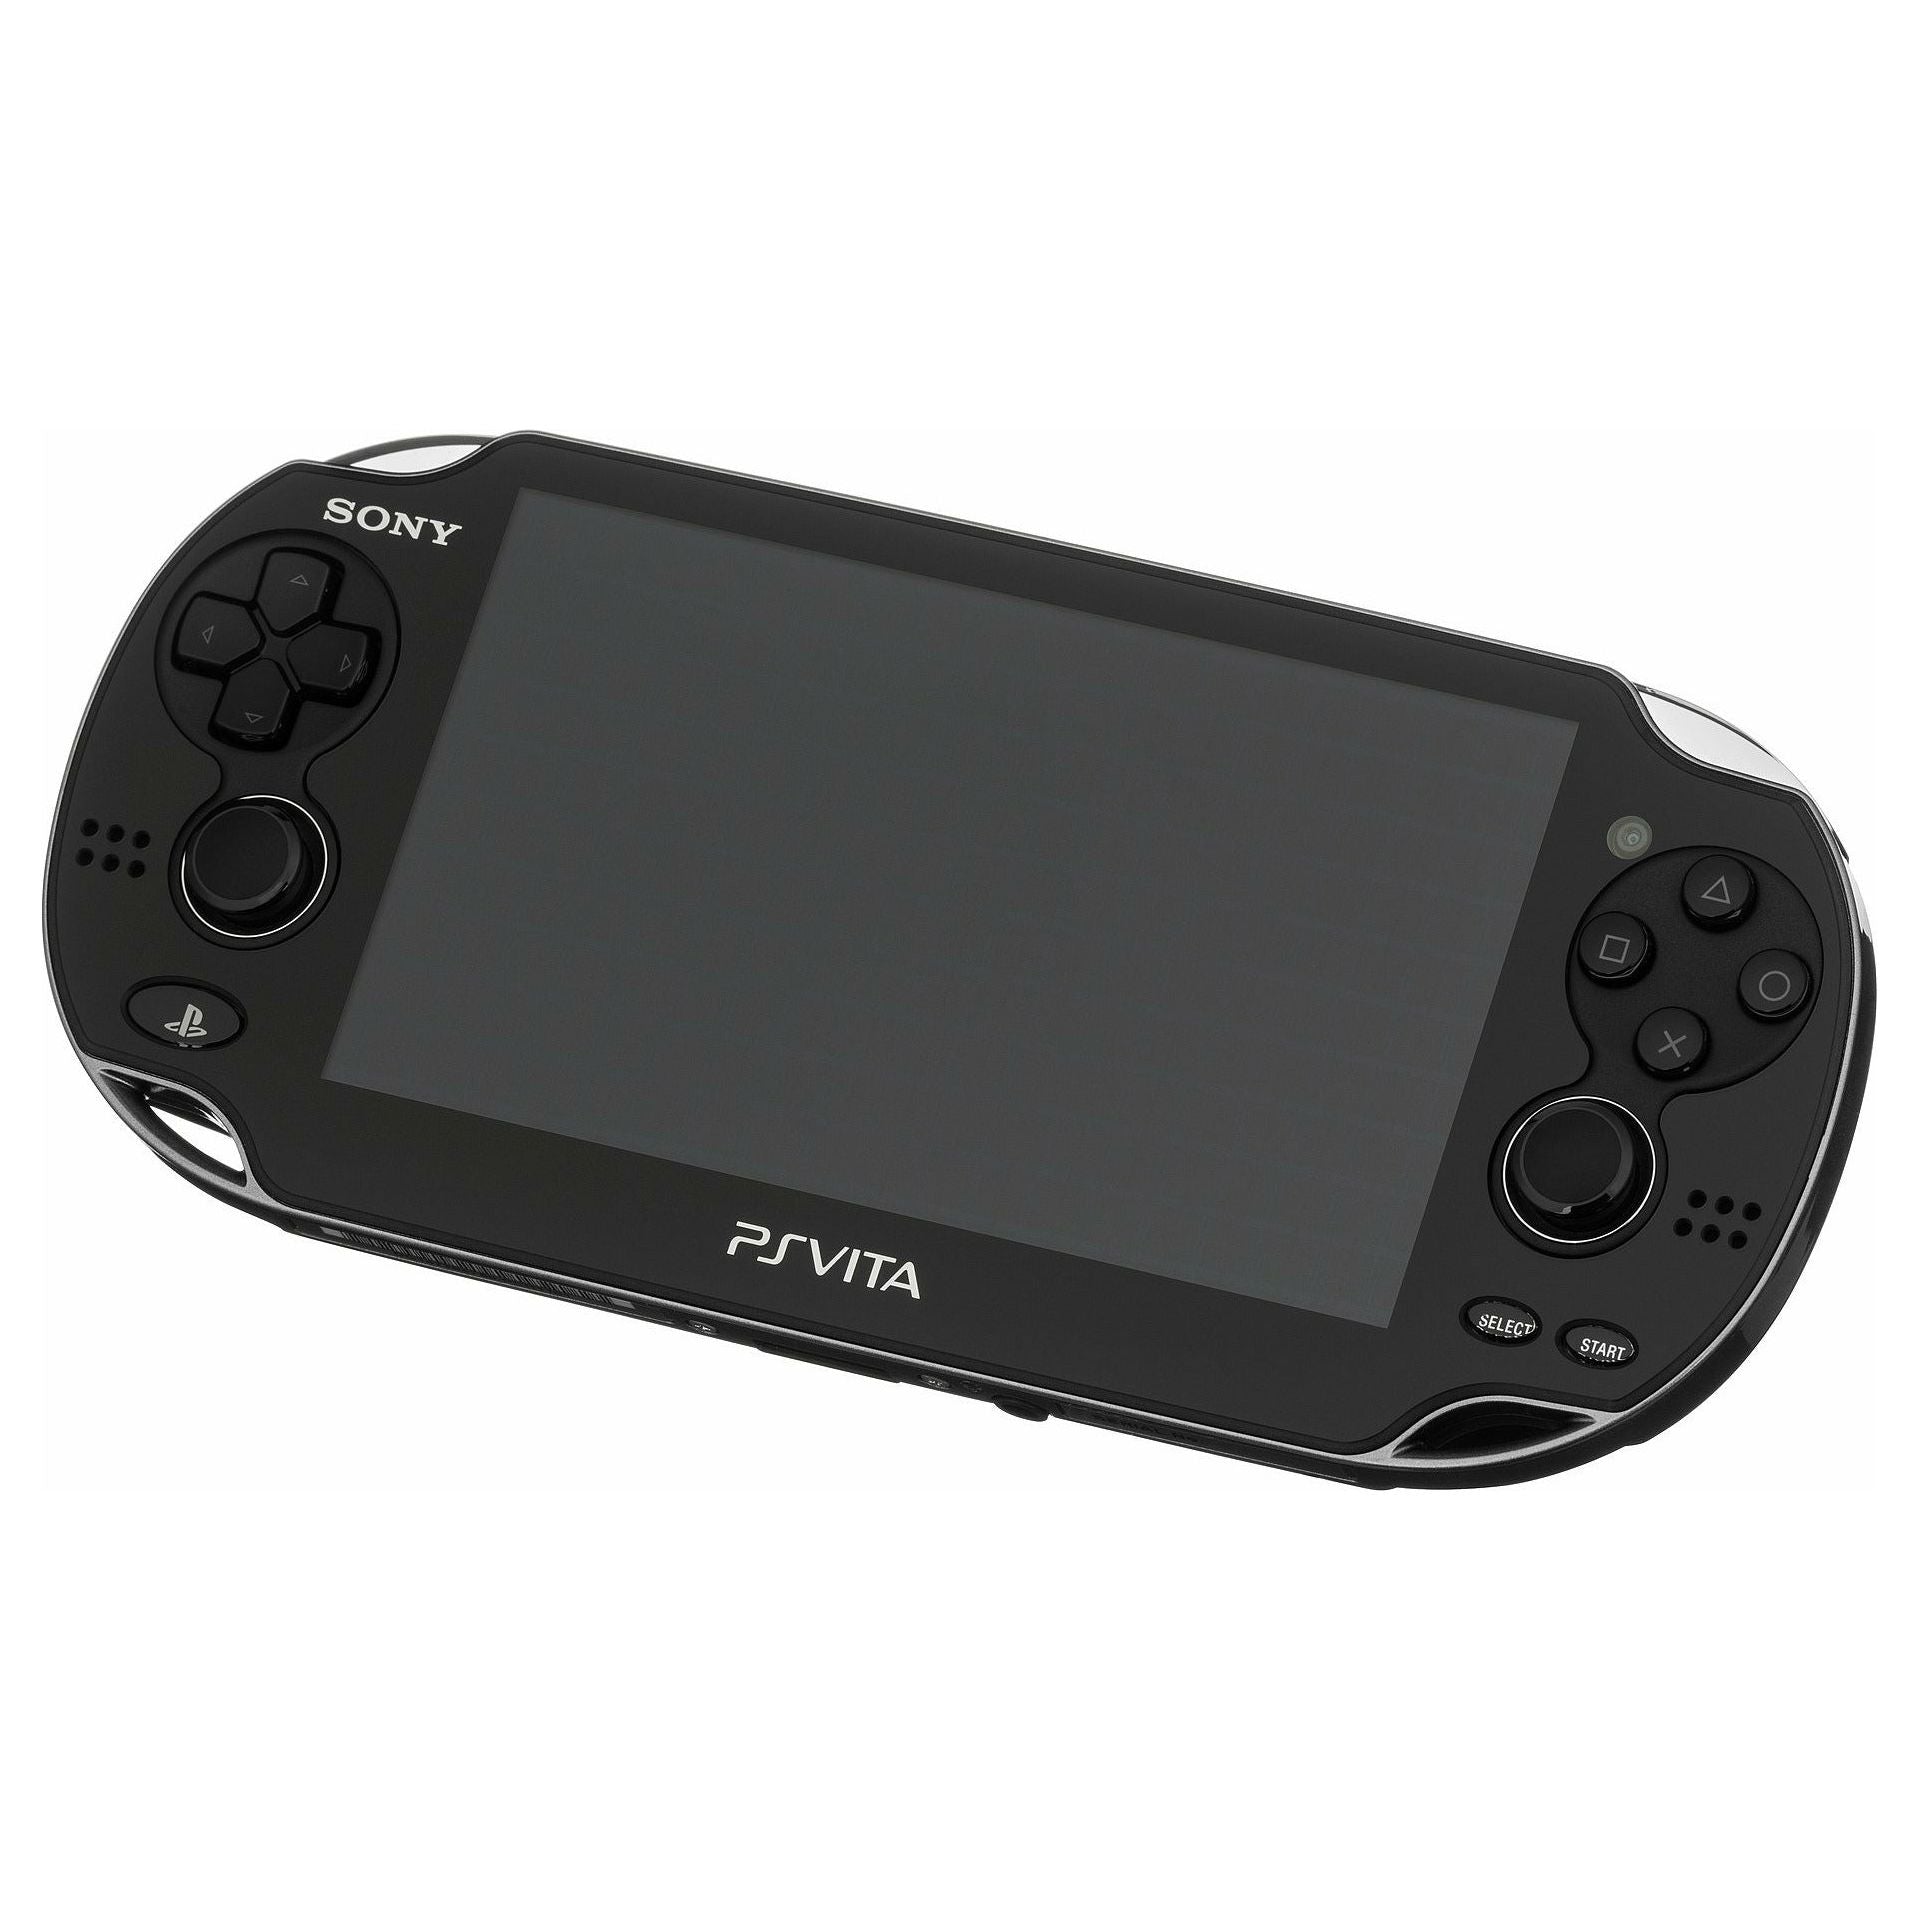 Système PS Vita - Modèle 1101 (Noir) (3G)